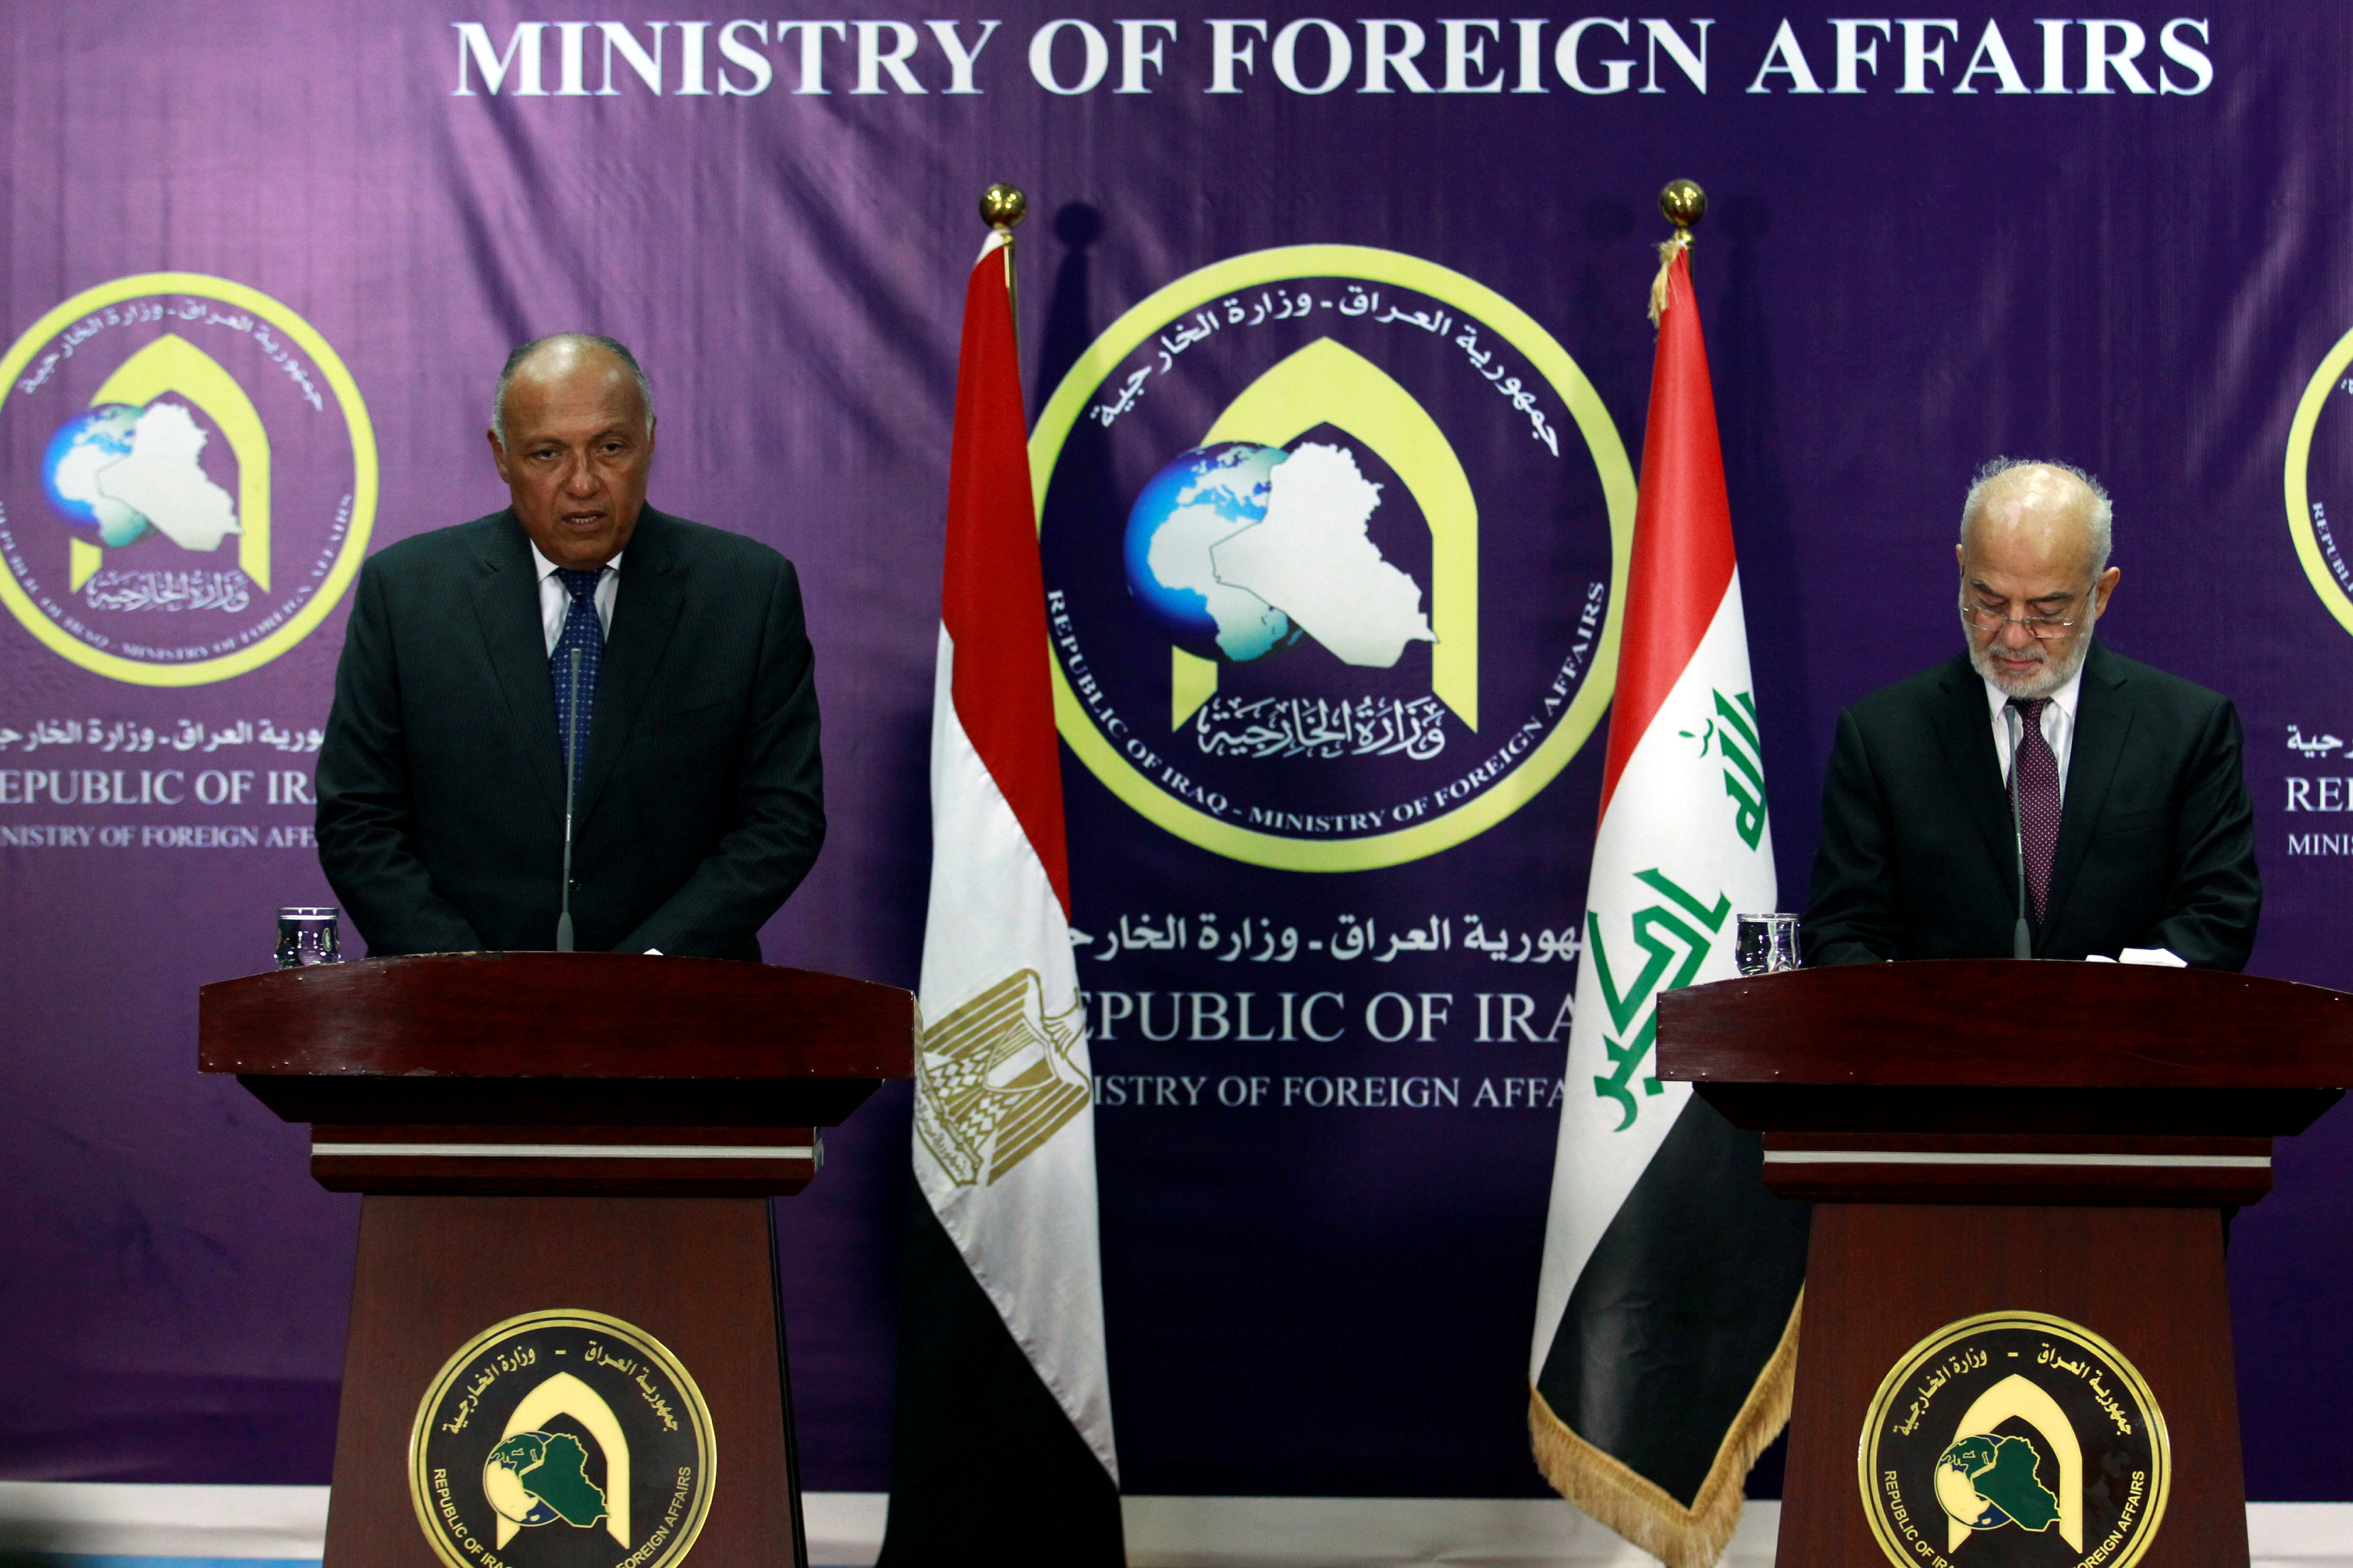 وزير الخارجية العراقي ابراهيم الجعفري وسامح شكرى